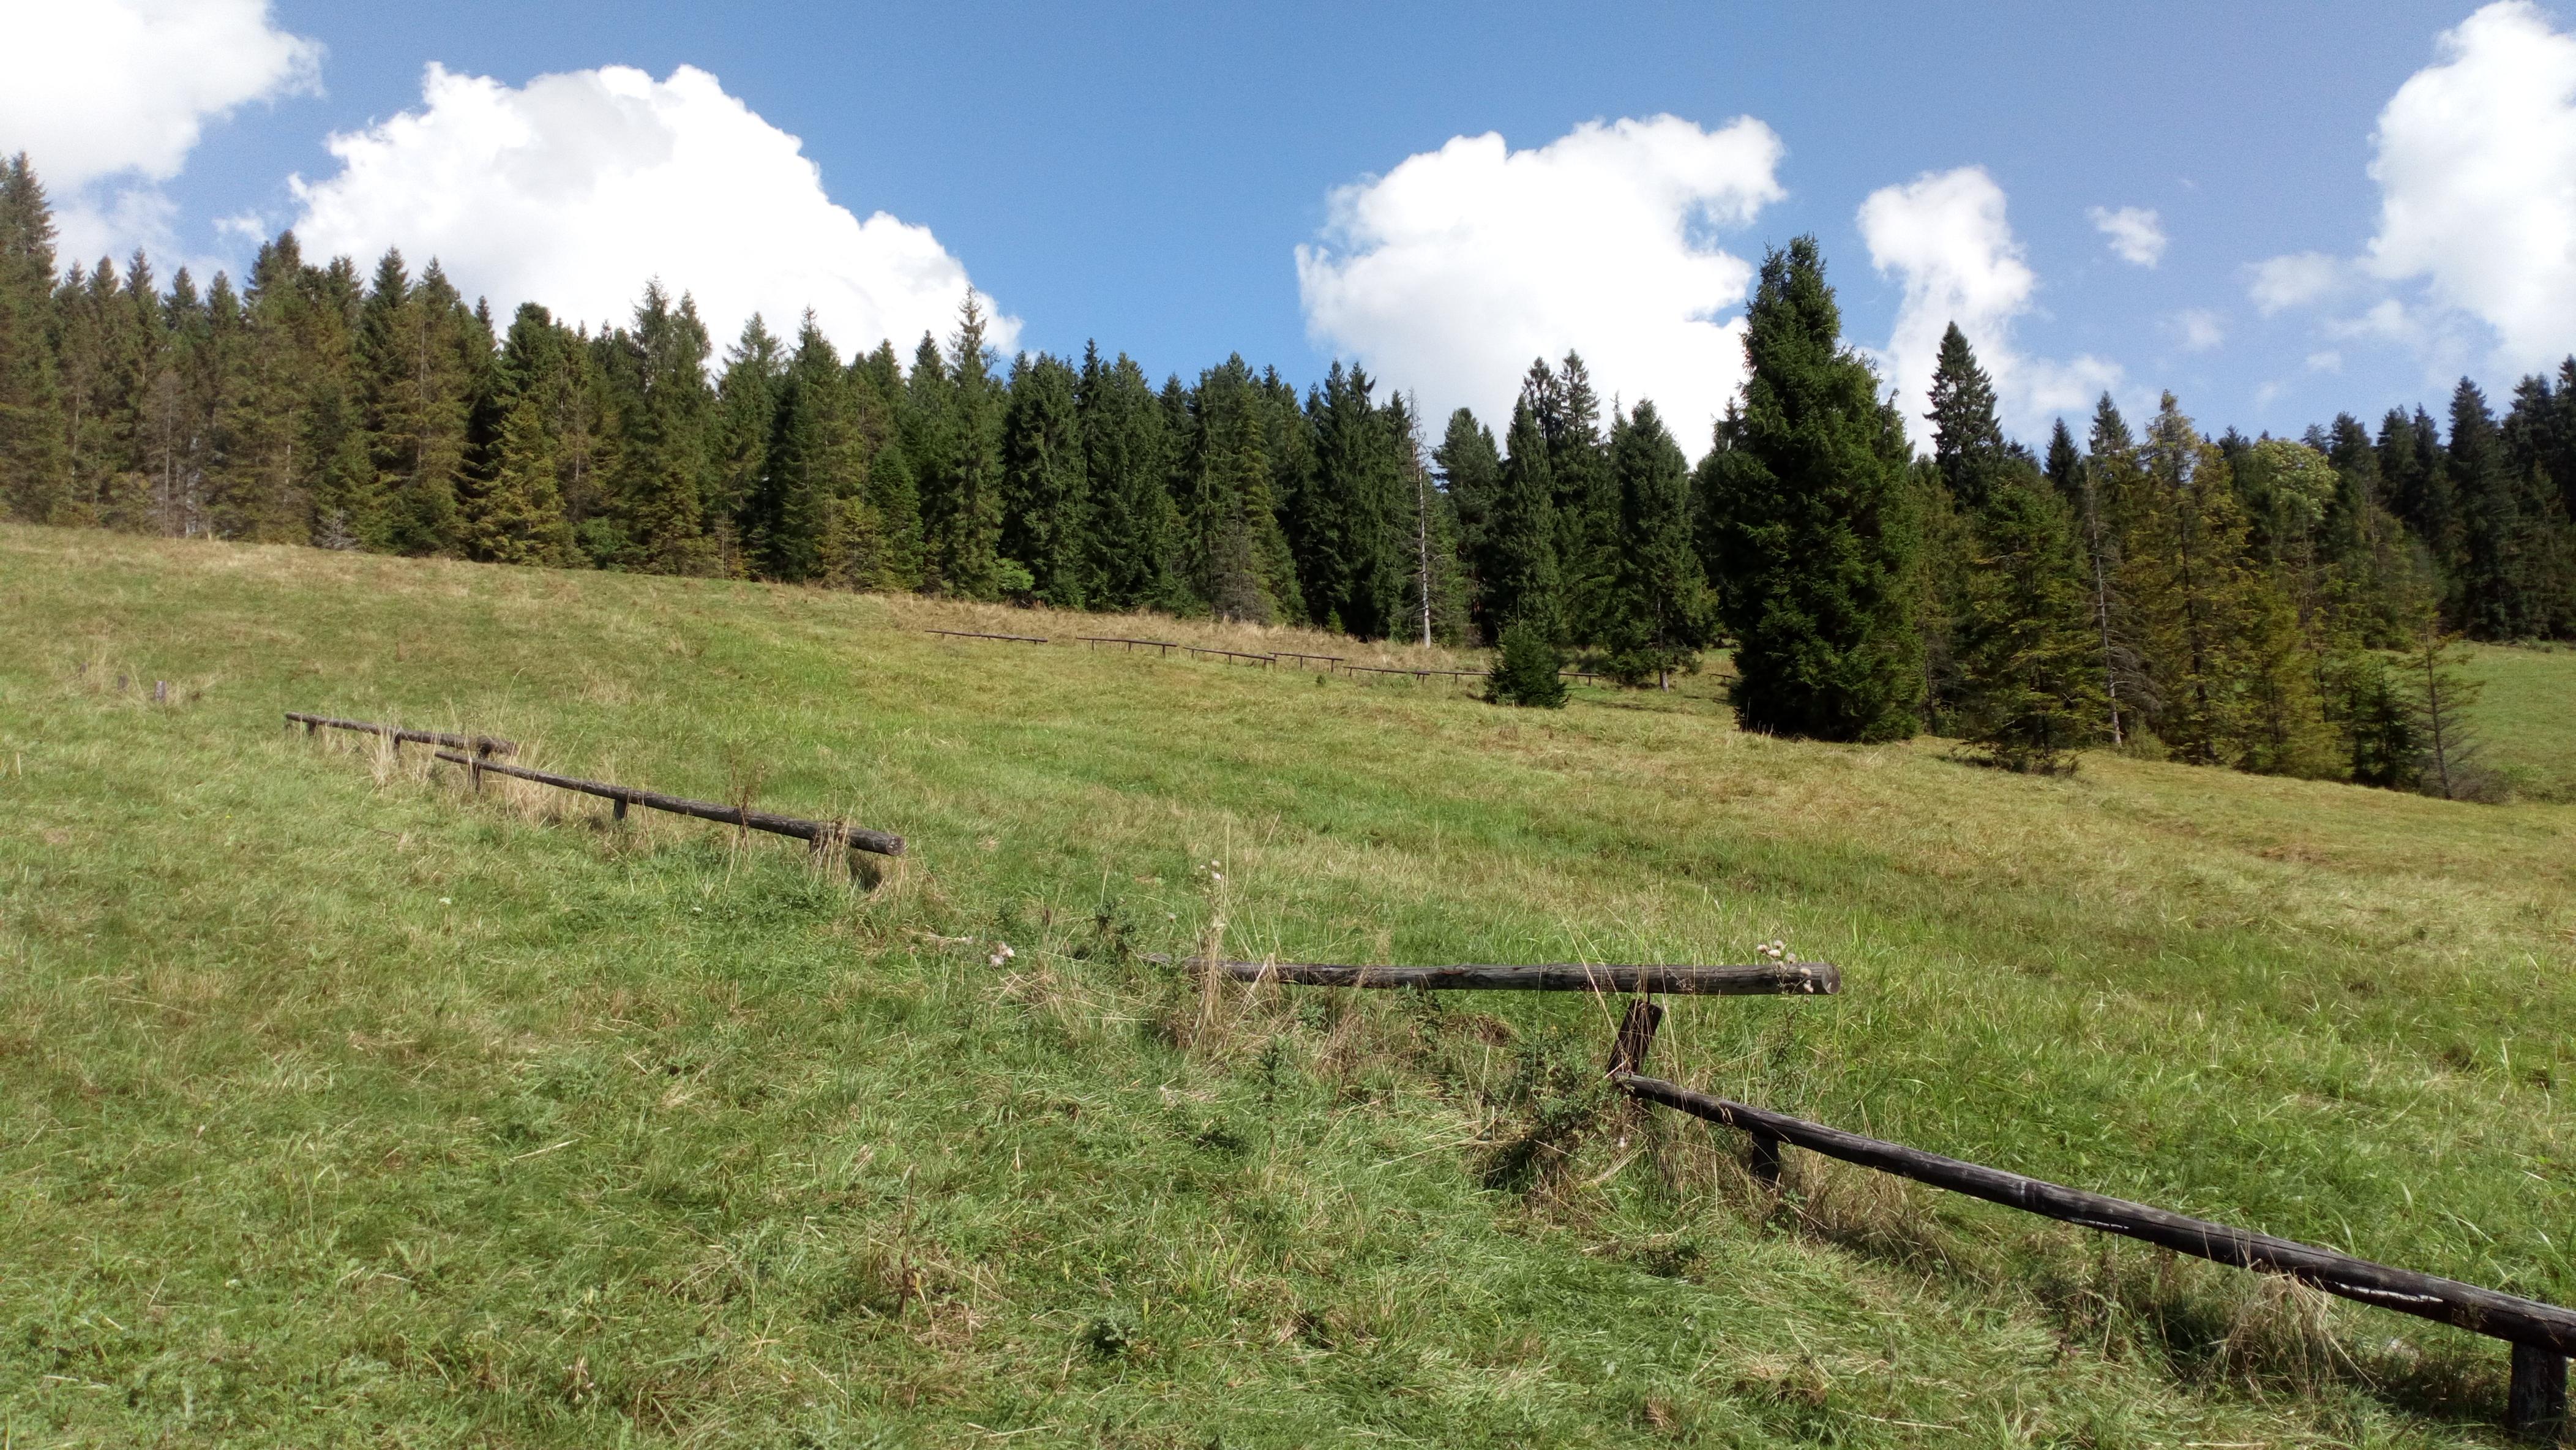 Zdjęcie prezentujące łąkę, na której rosną chronione pierwiosnki. Na pierwszym planie widoczne proste drewniane ogrodzenie, w tle las.